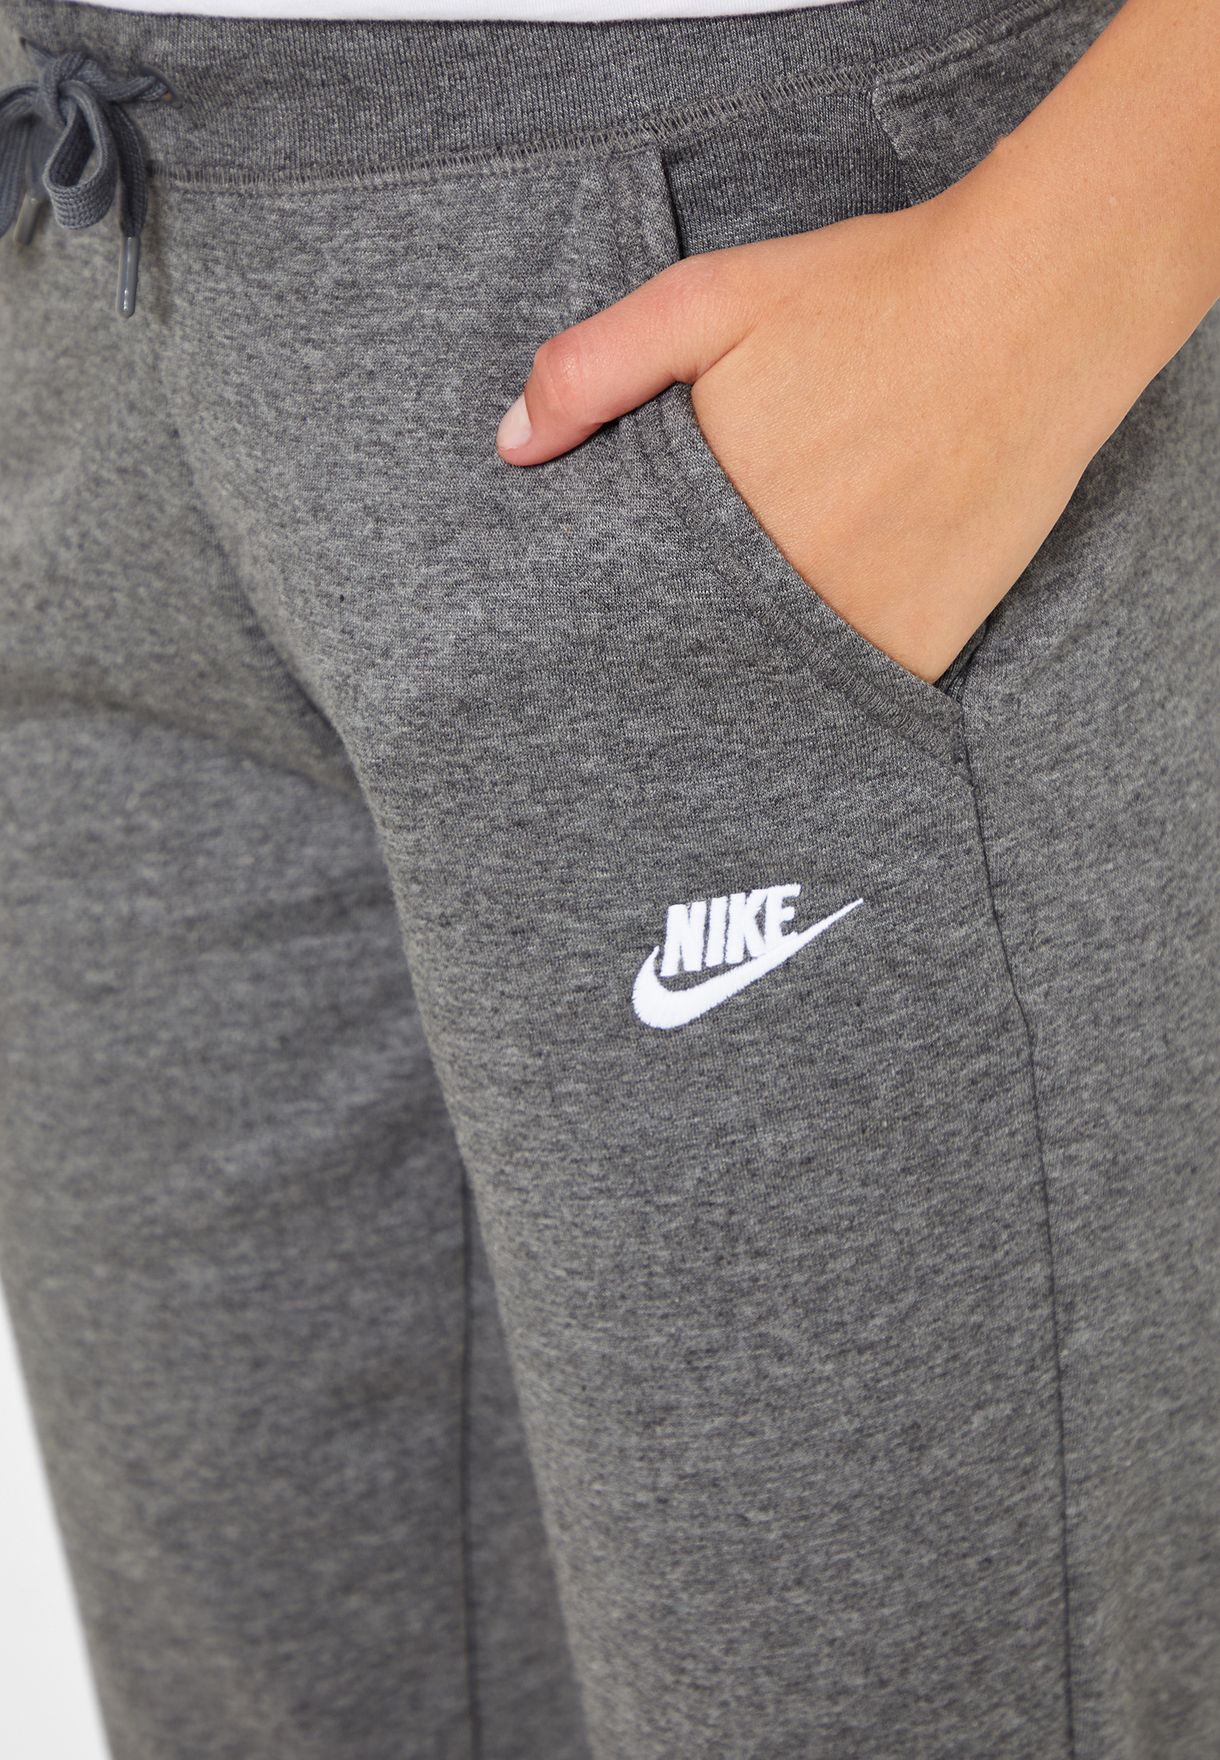 Buy Nike grey NSW Fleece Sweatpants for 